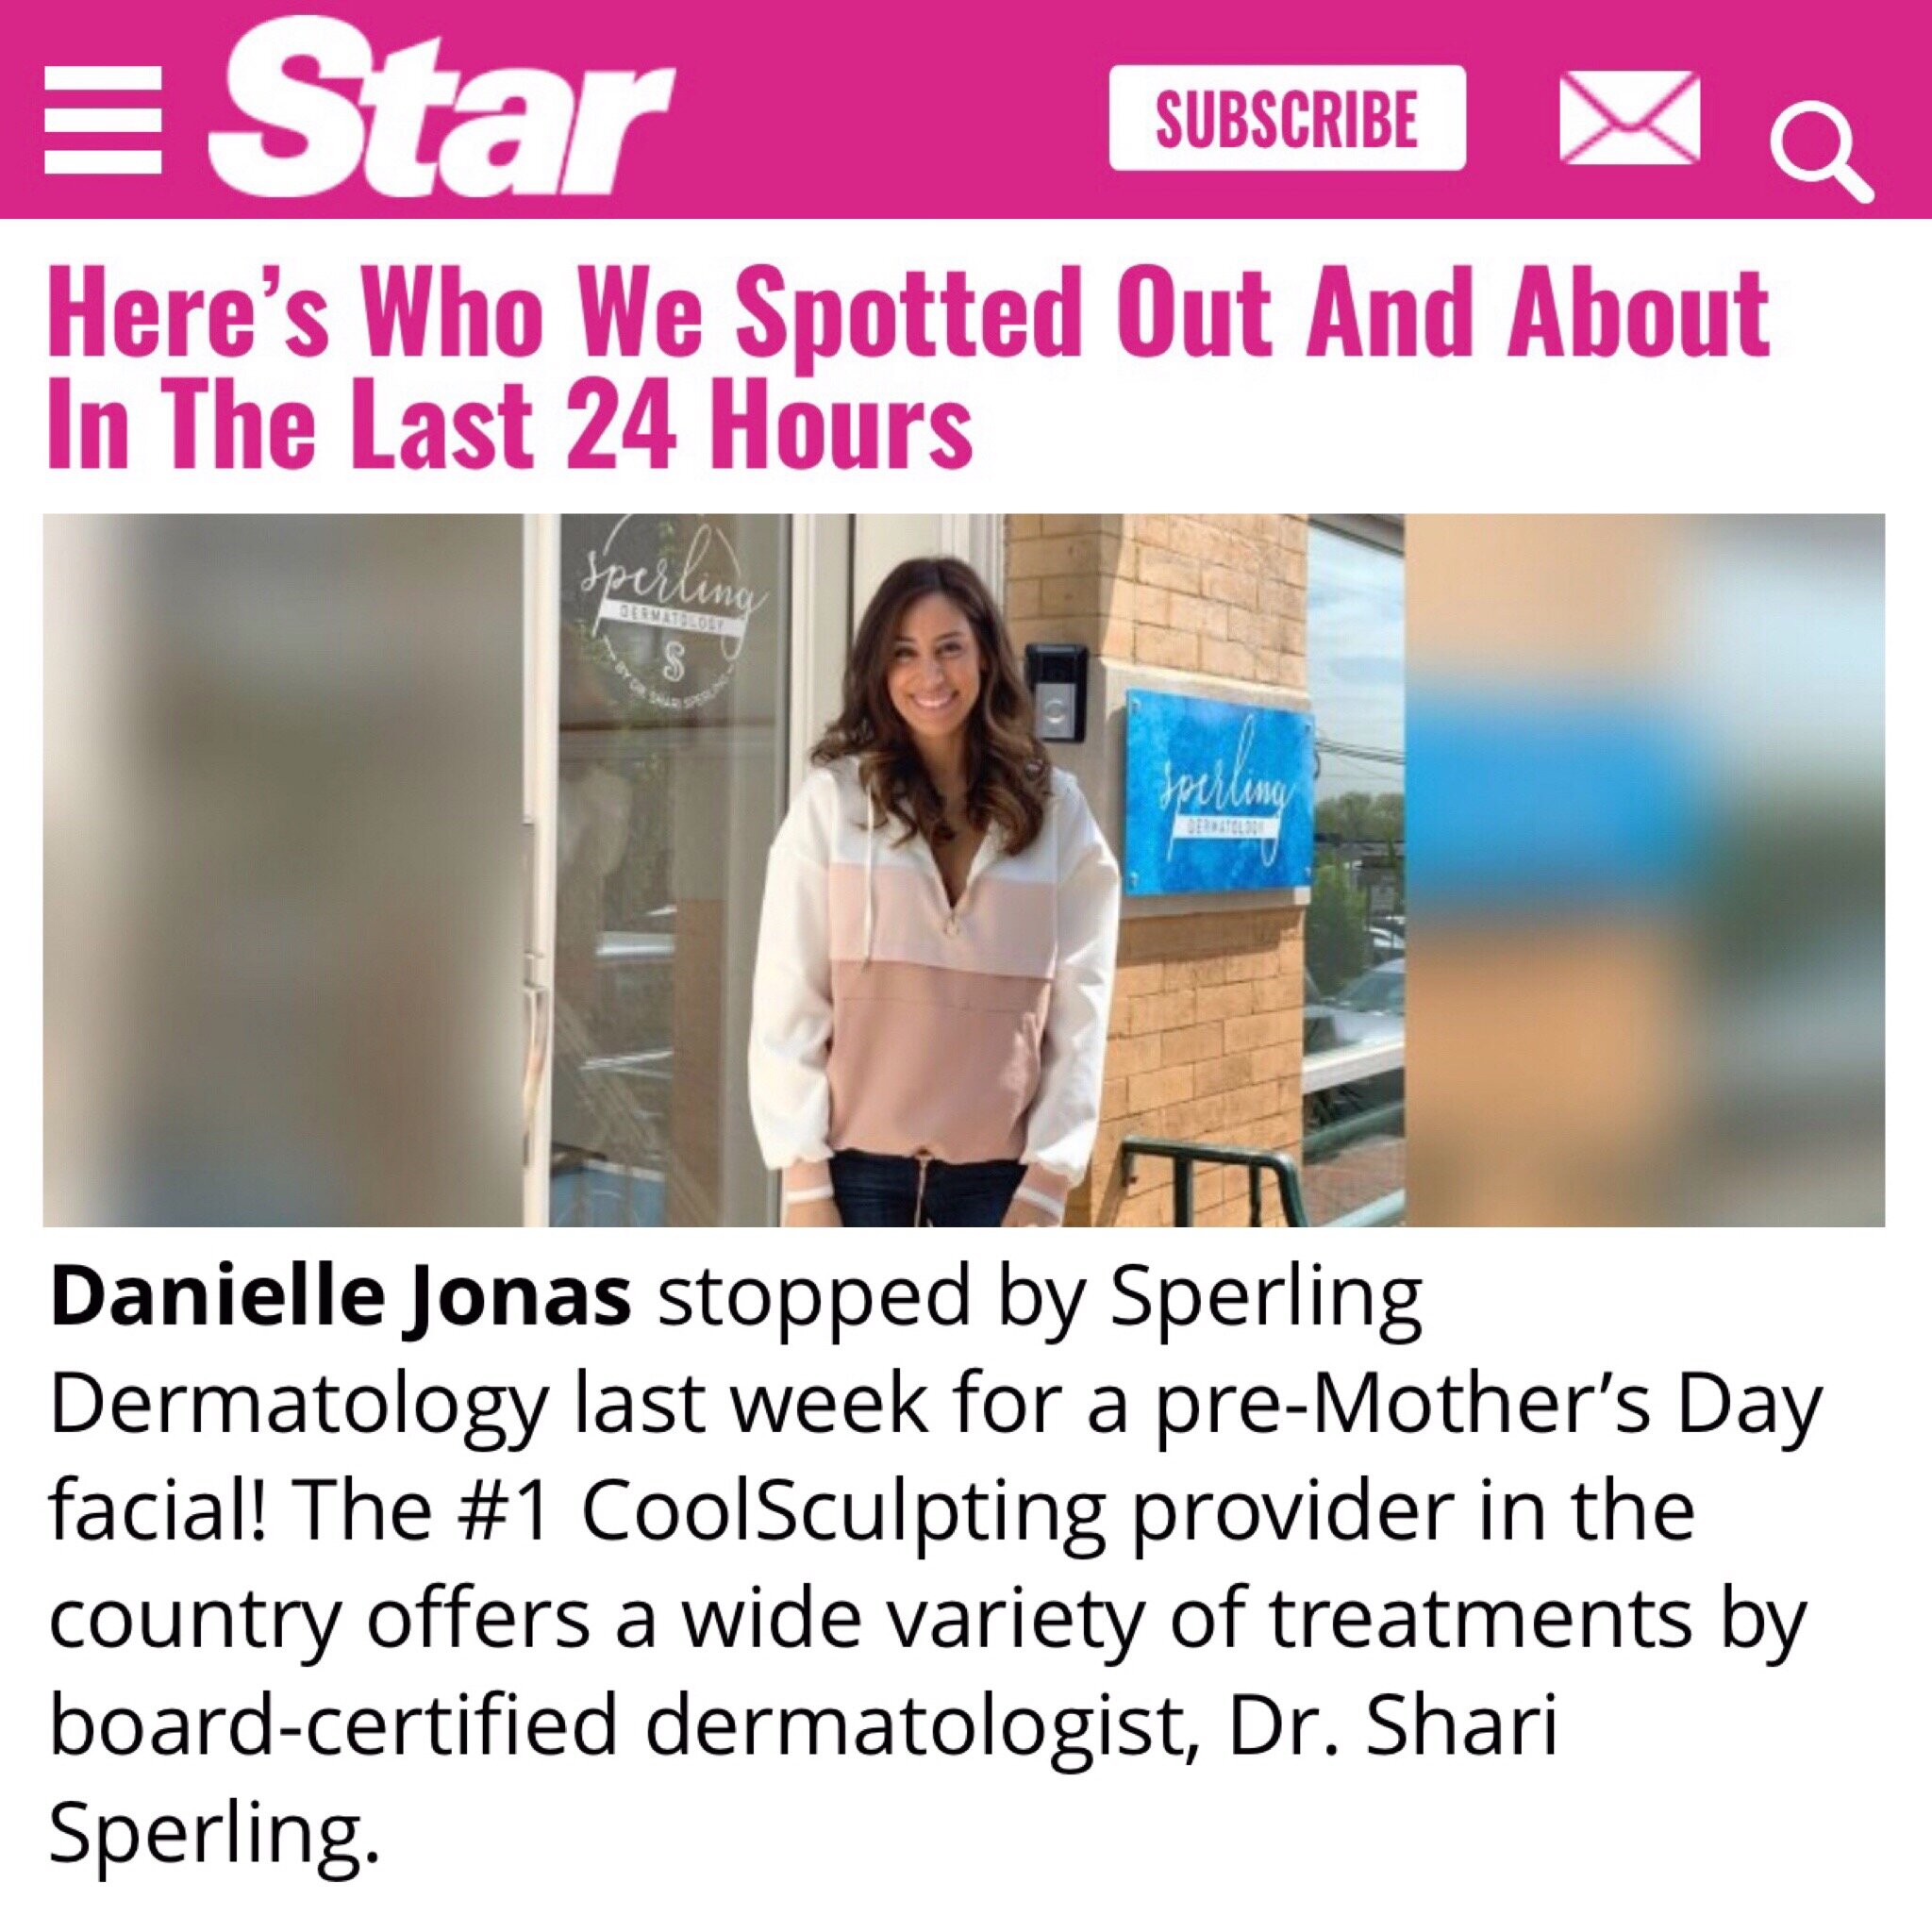 Sperling Dermatology featured in Shape